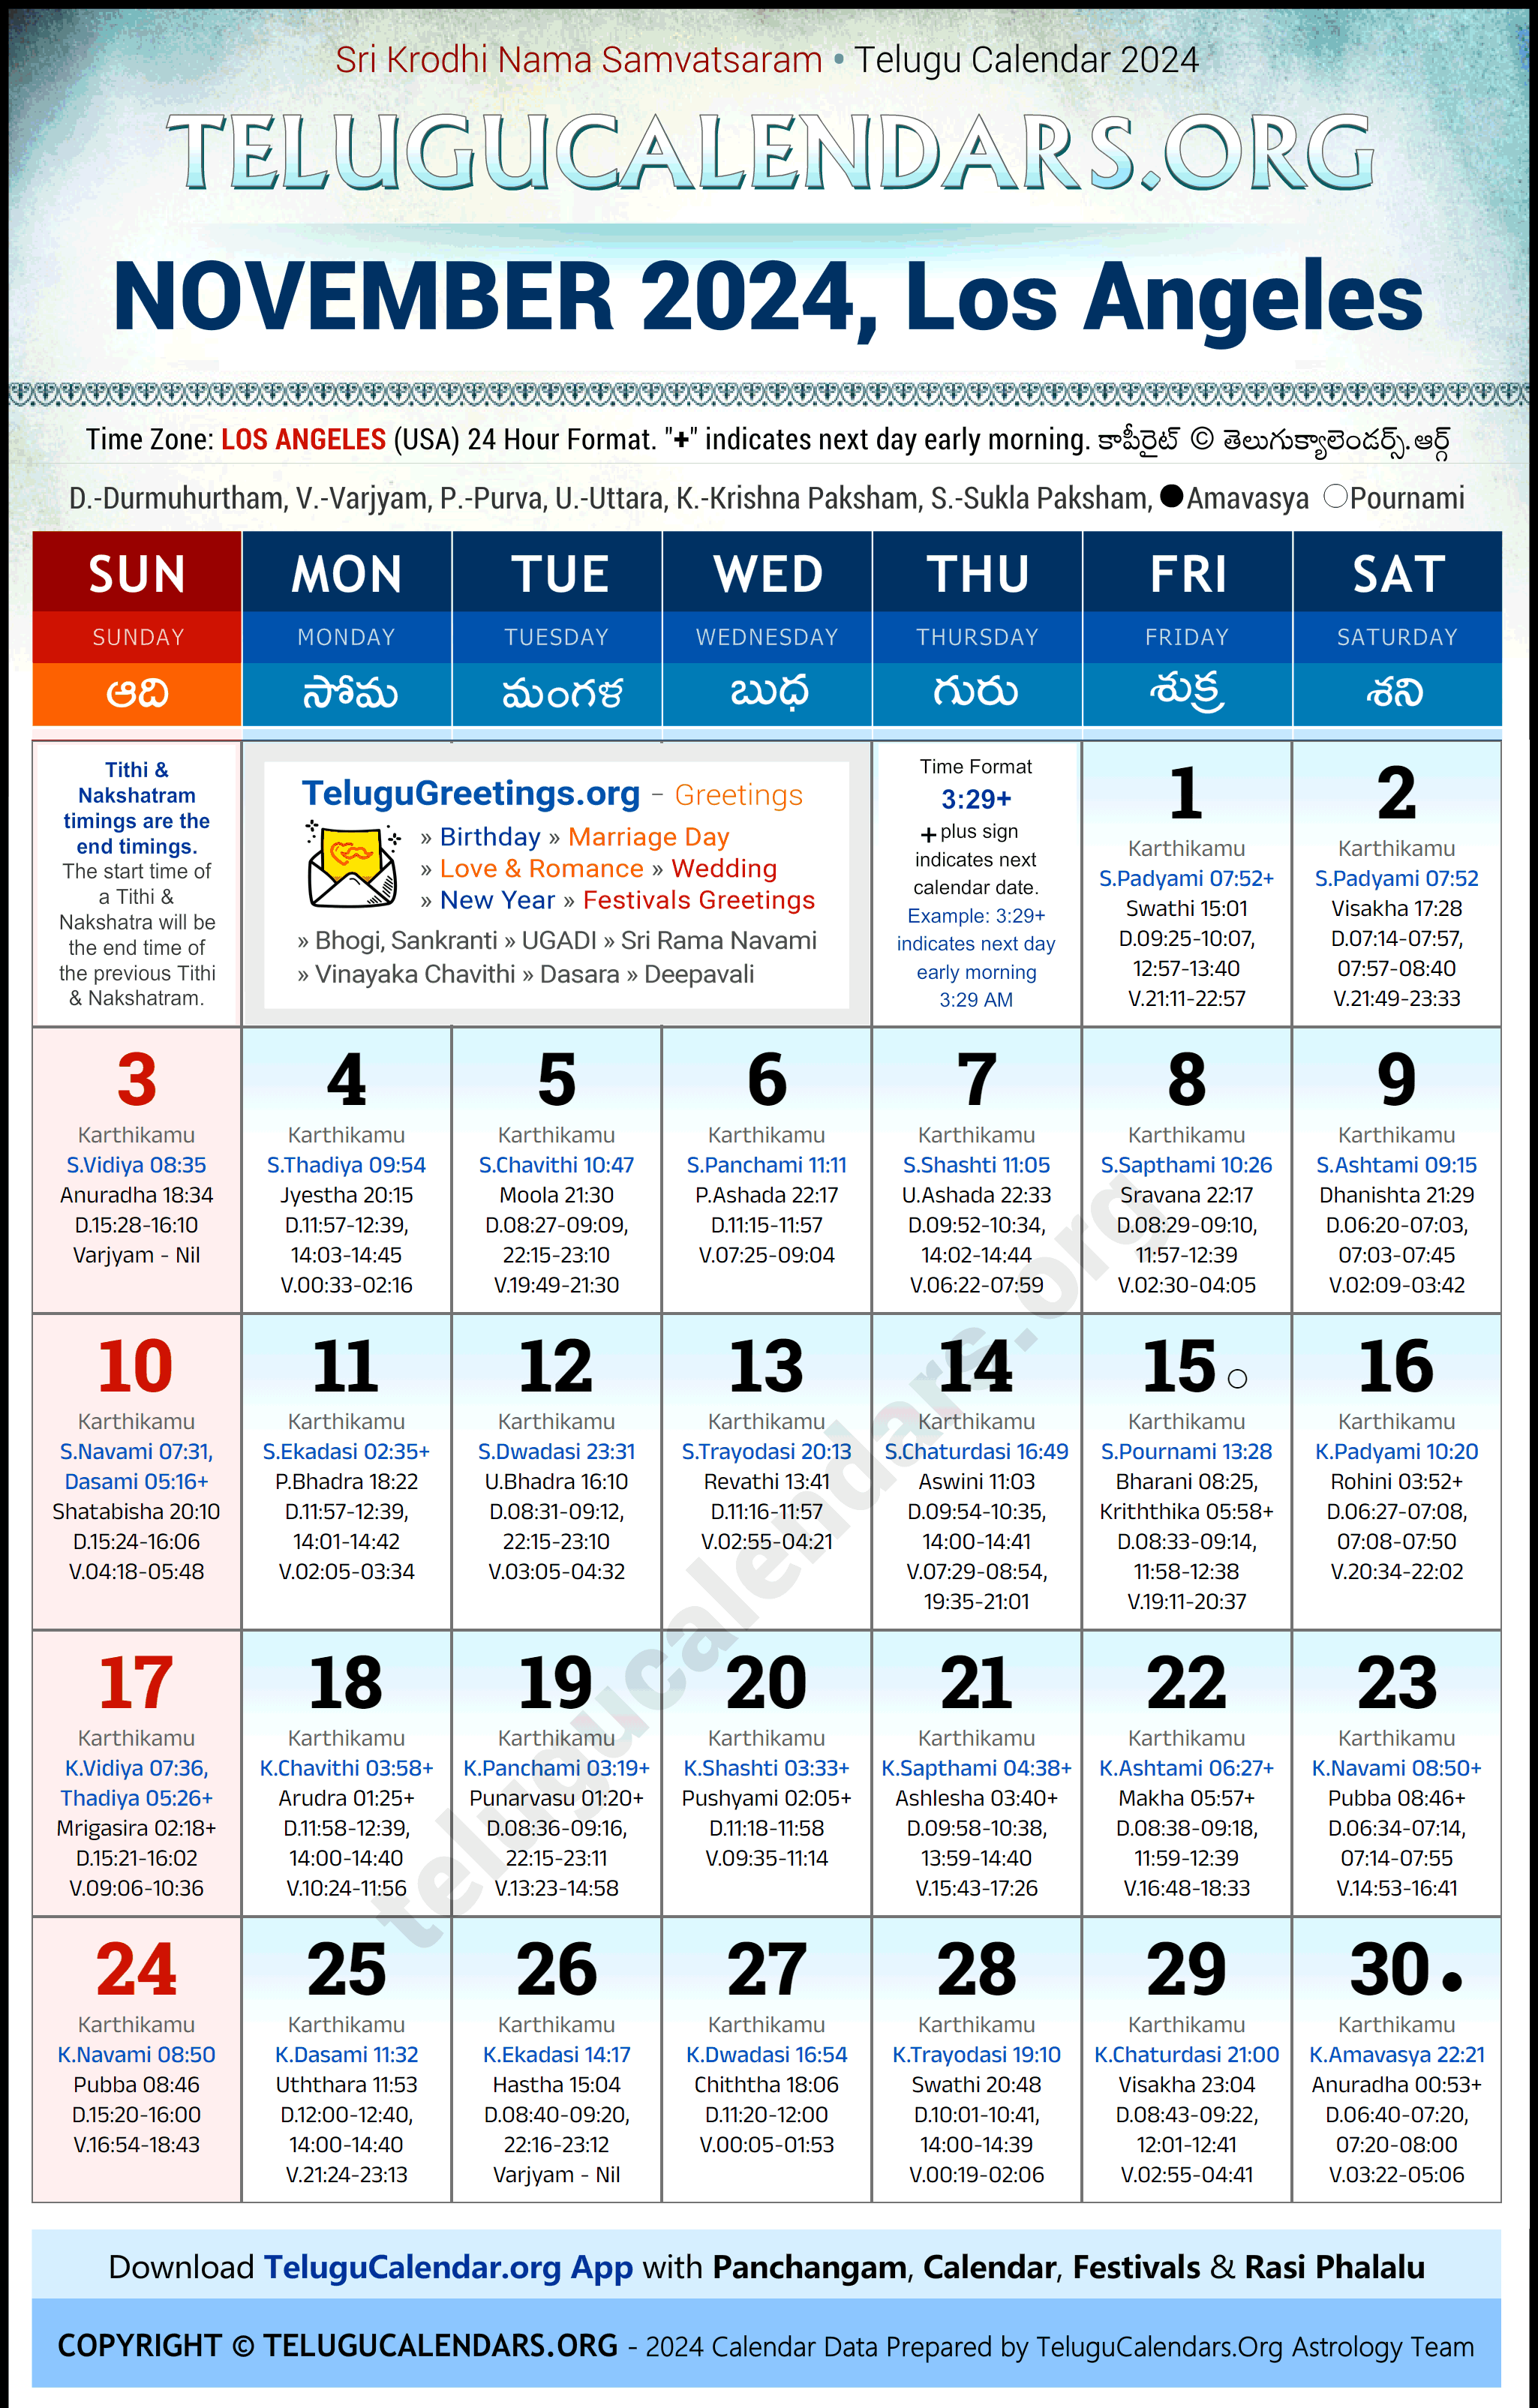 Telugu Calendar 2024 November Festivals for Los Angeles